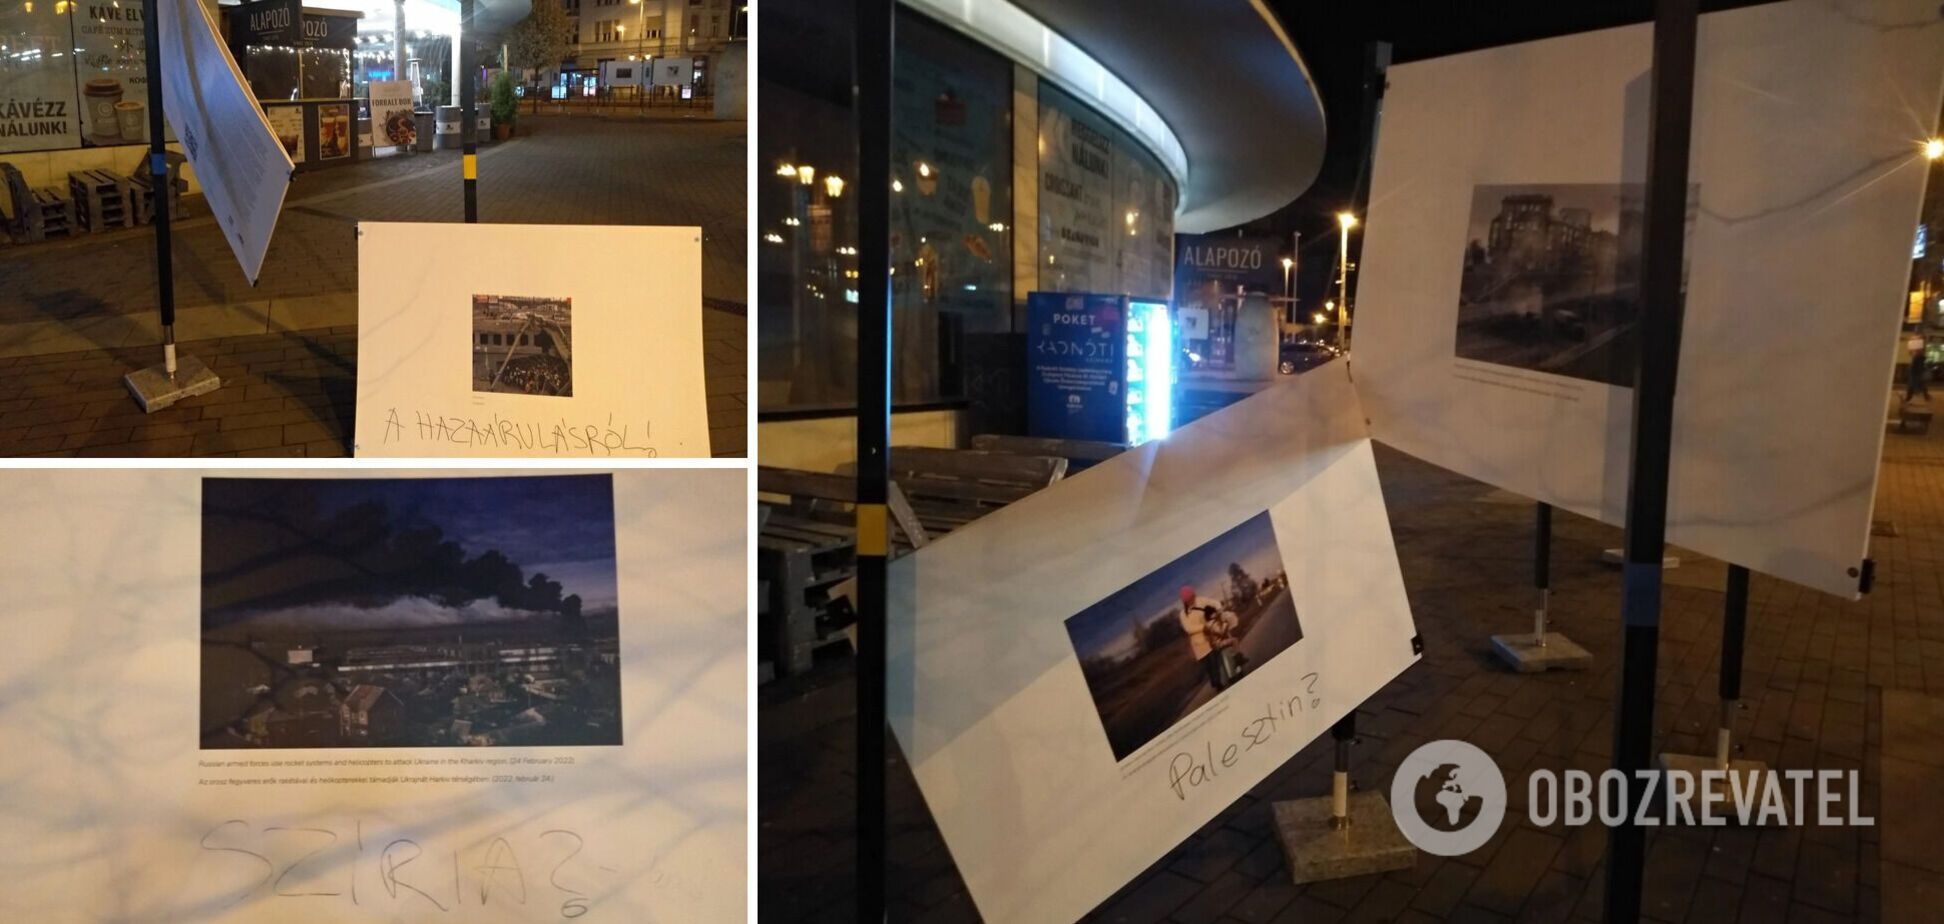 В Будапеште вандалы изуродовали выставку, которая рассказывала о преступлениях российских оккупантов в Украине. Фото